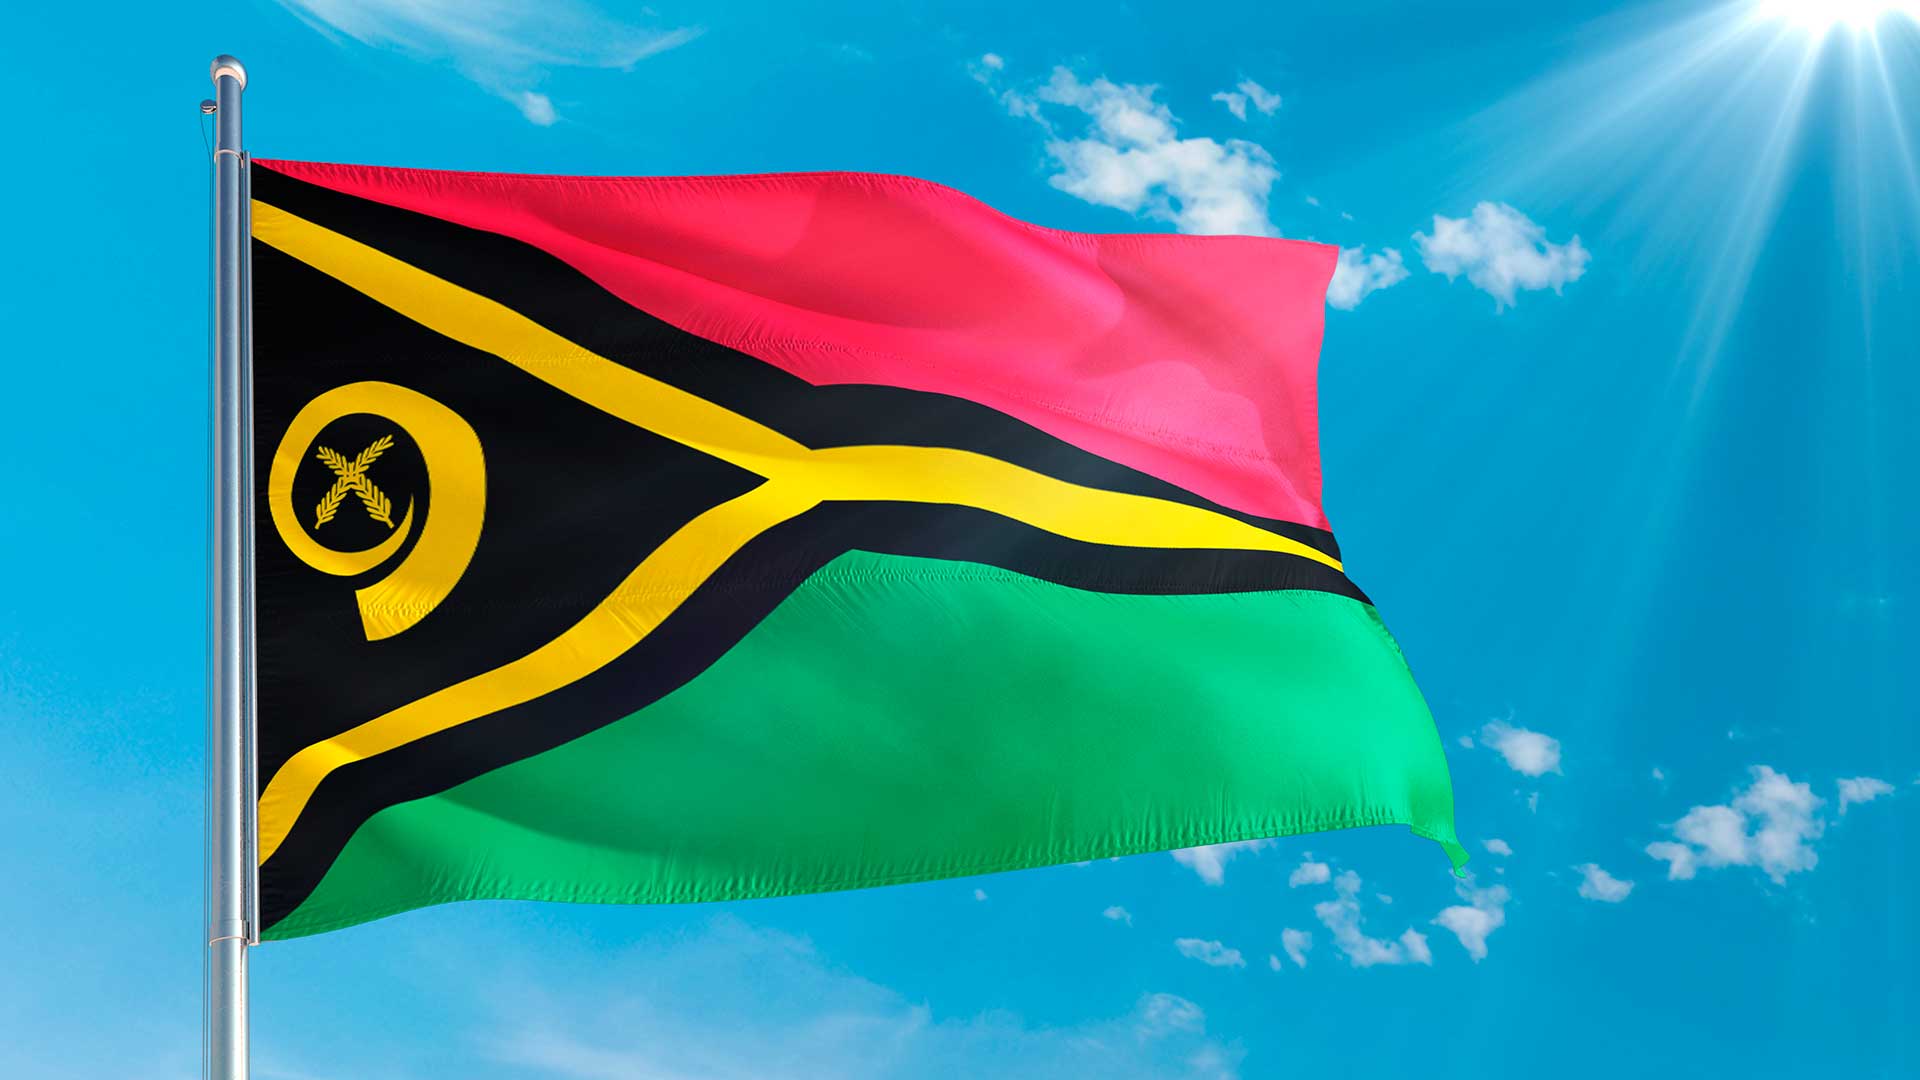 Флаг Вануату, страны, с которой европейская комиссия приостановит действие безвизового режима